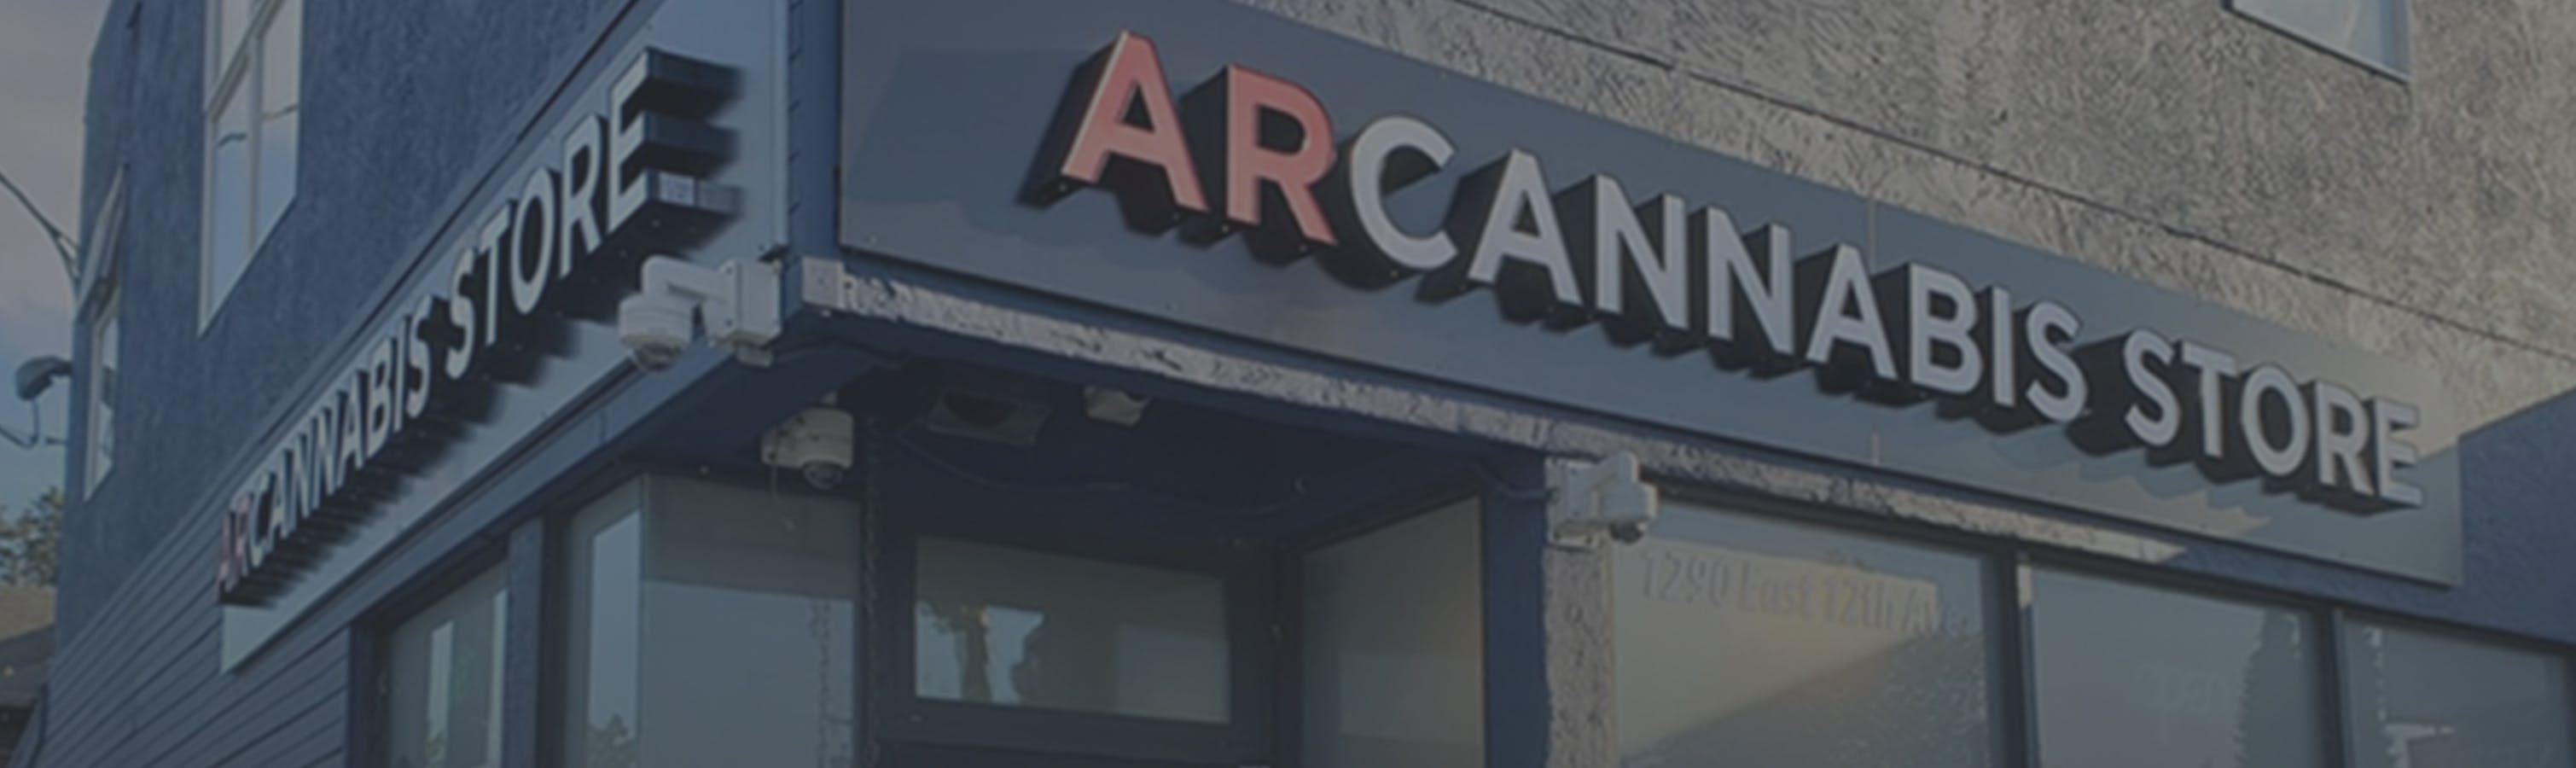 Cannabis Store ARCANNABIS (12th Ave) - 0